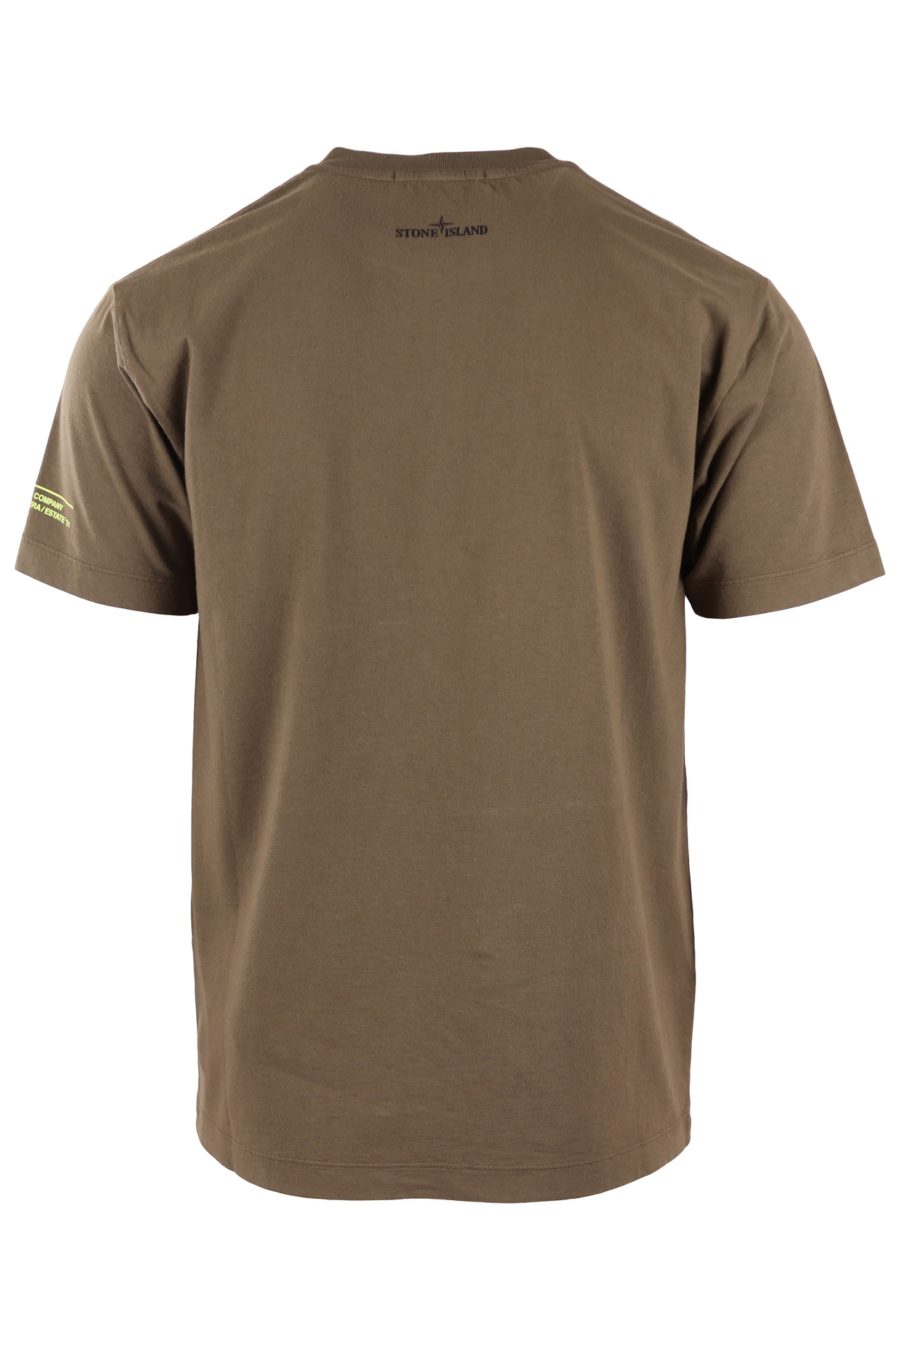 Stone Island T-shirt vert militaire avec logo - b68317dc8c648ea88ca5c2c26d824a7788e8d956